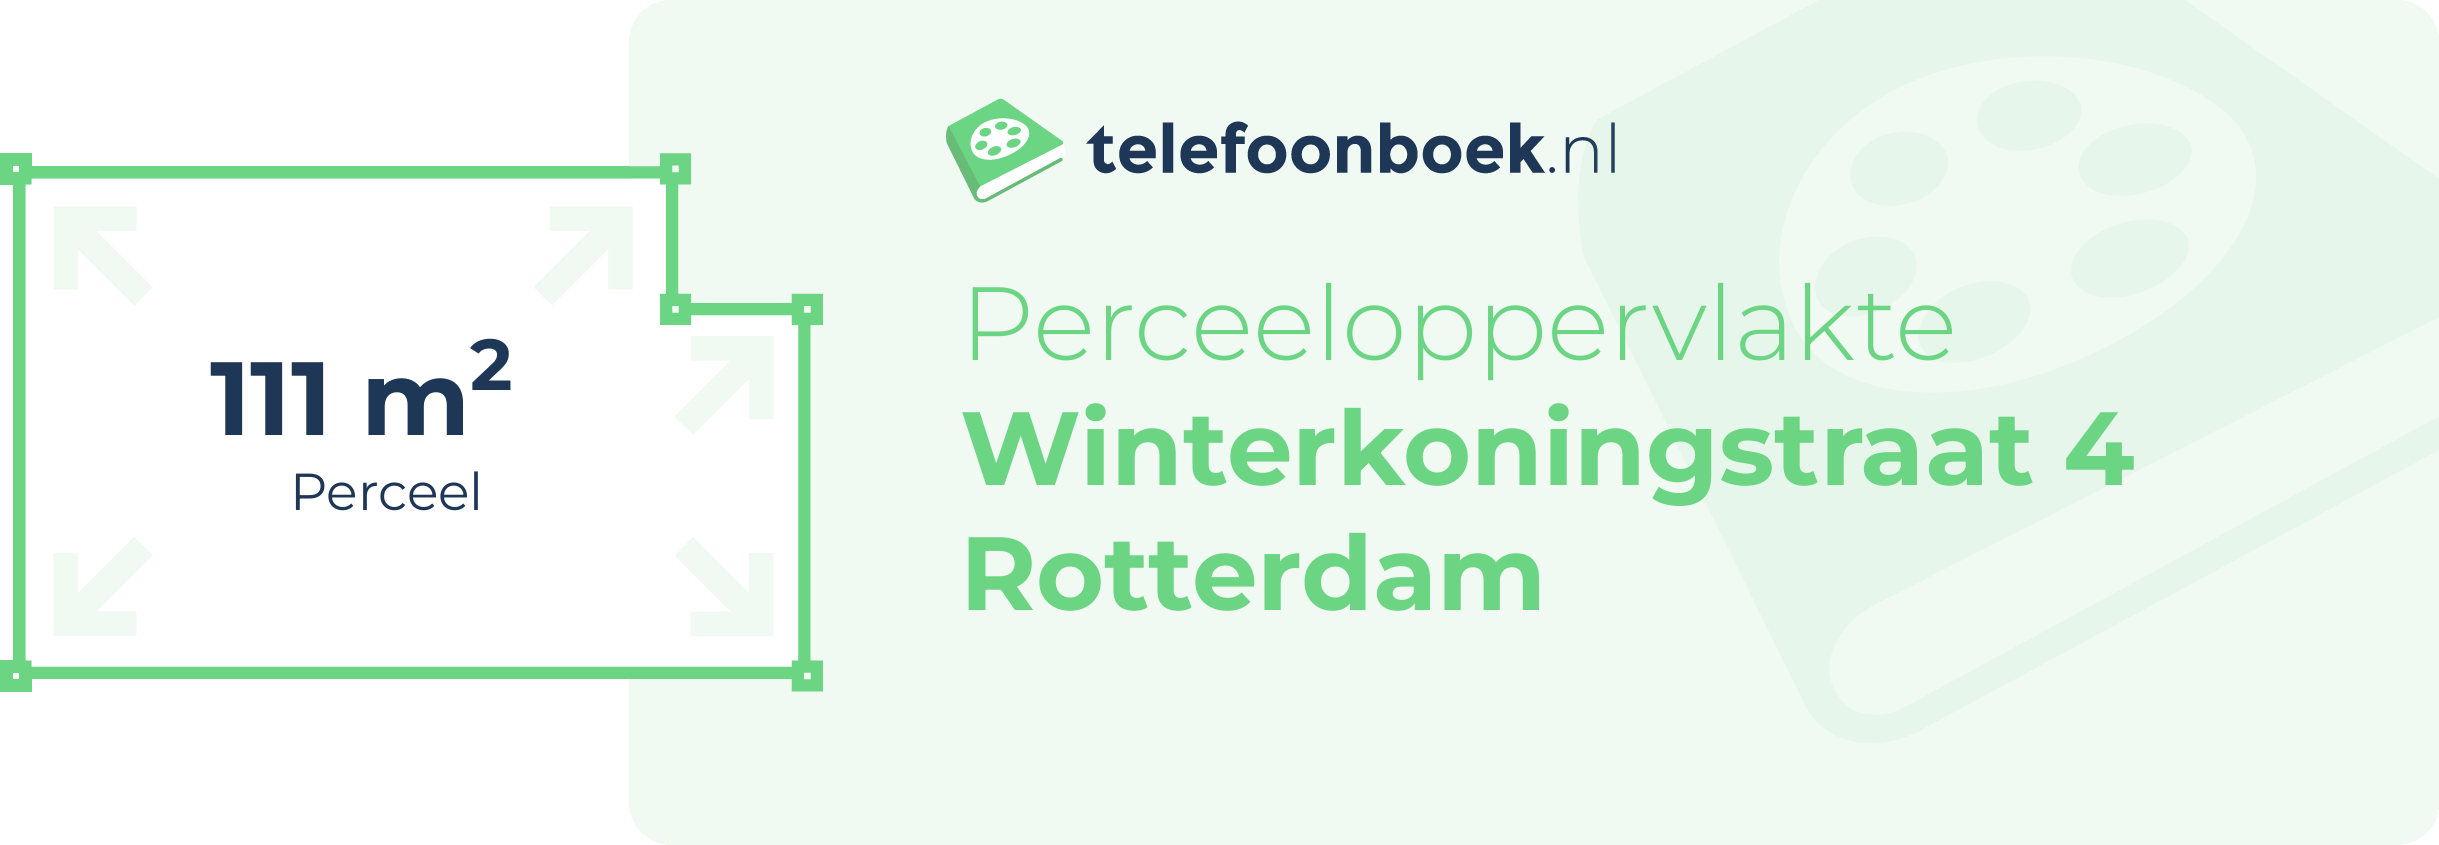 Perceeloppervlakte Winterkoningstraat 4 Rotterdam